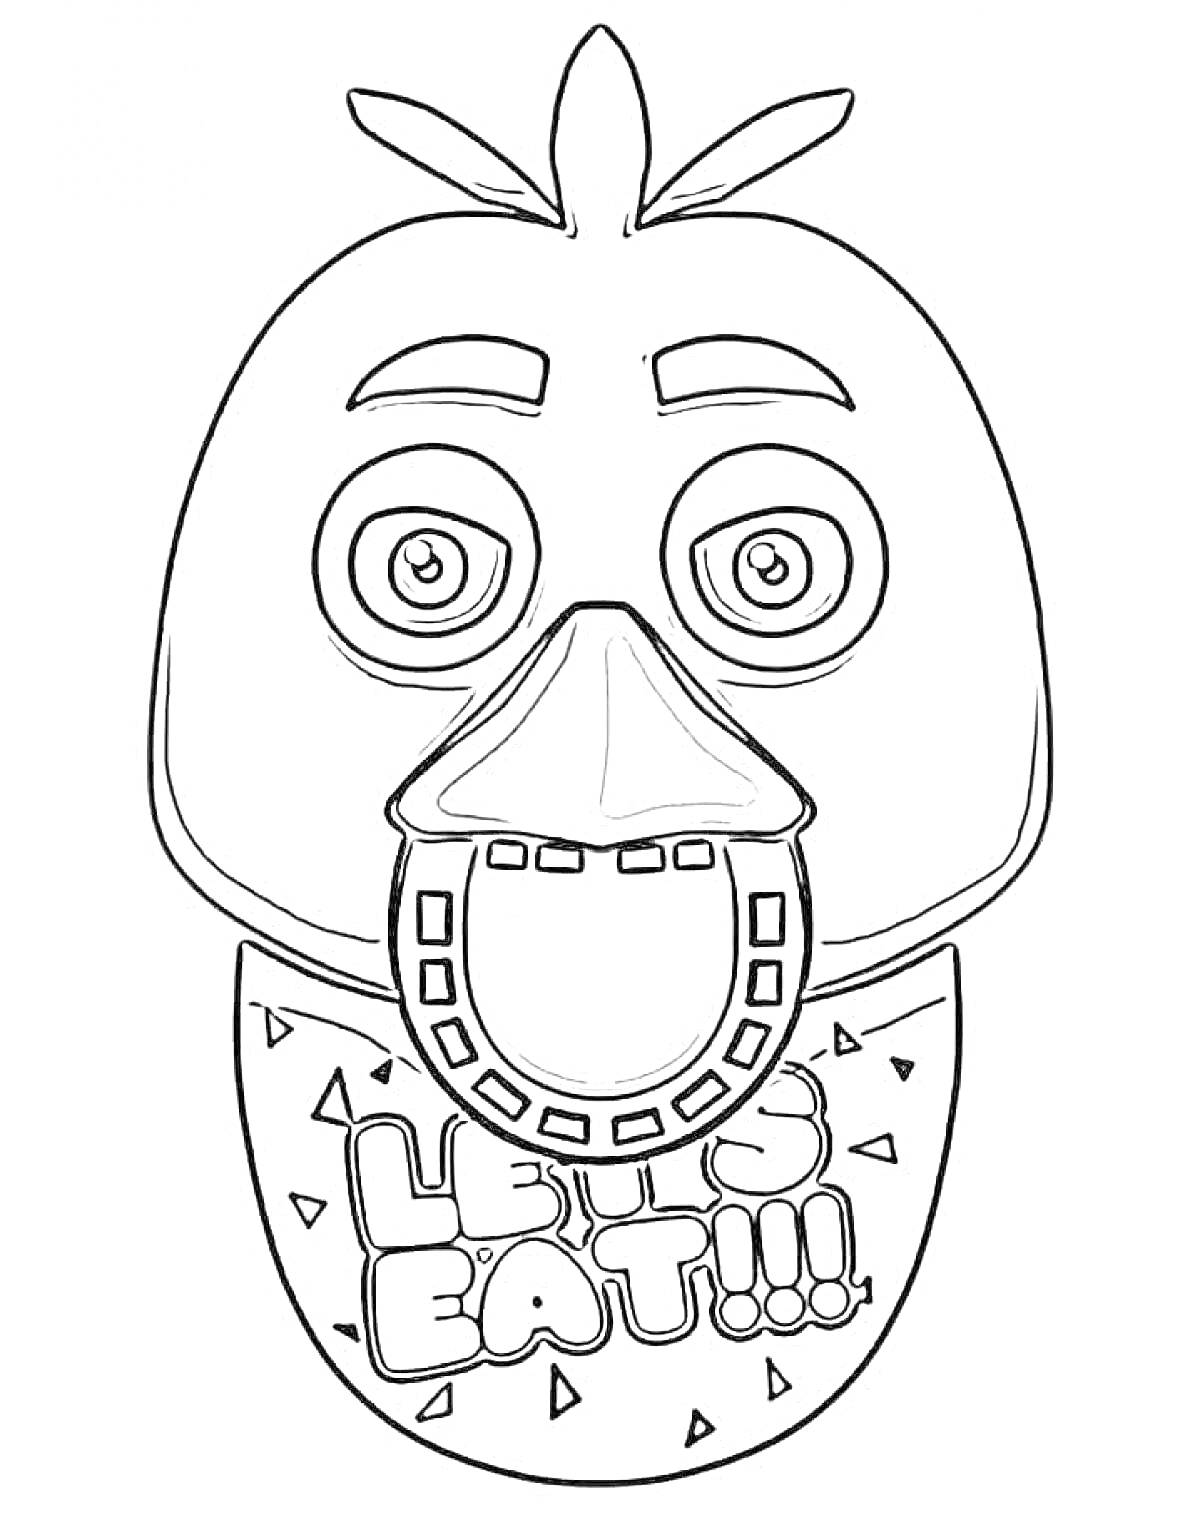 Раскраска Чика с выражением лица и передником с надписью 